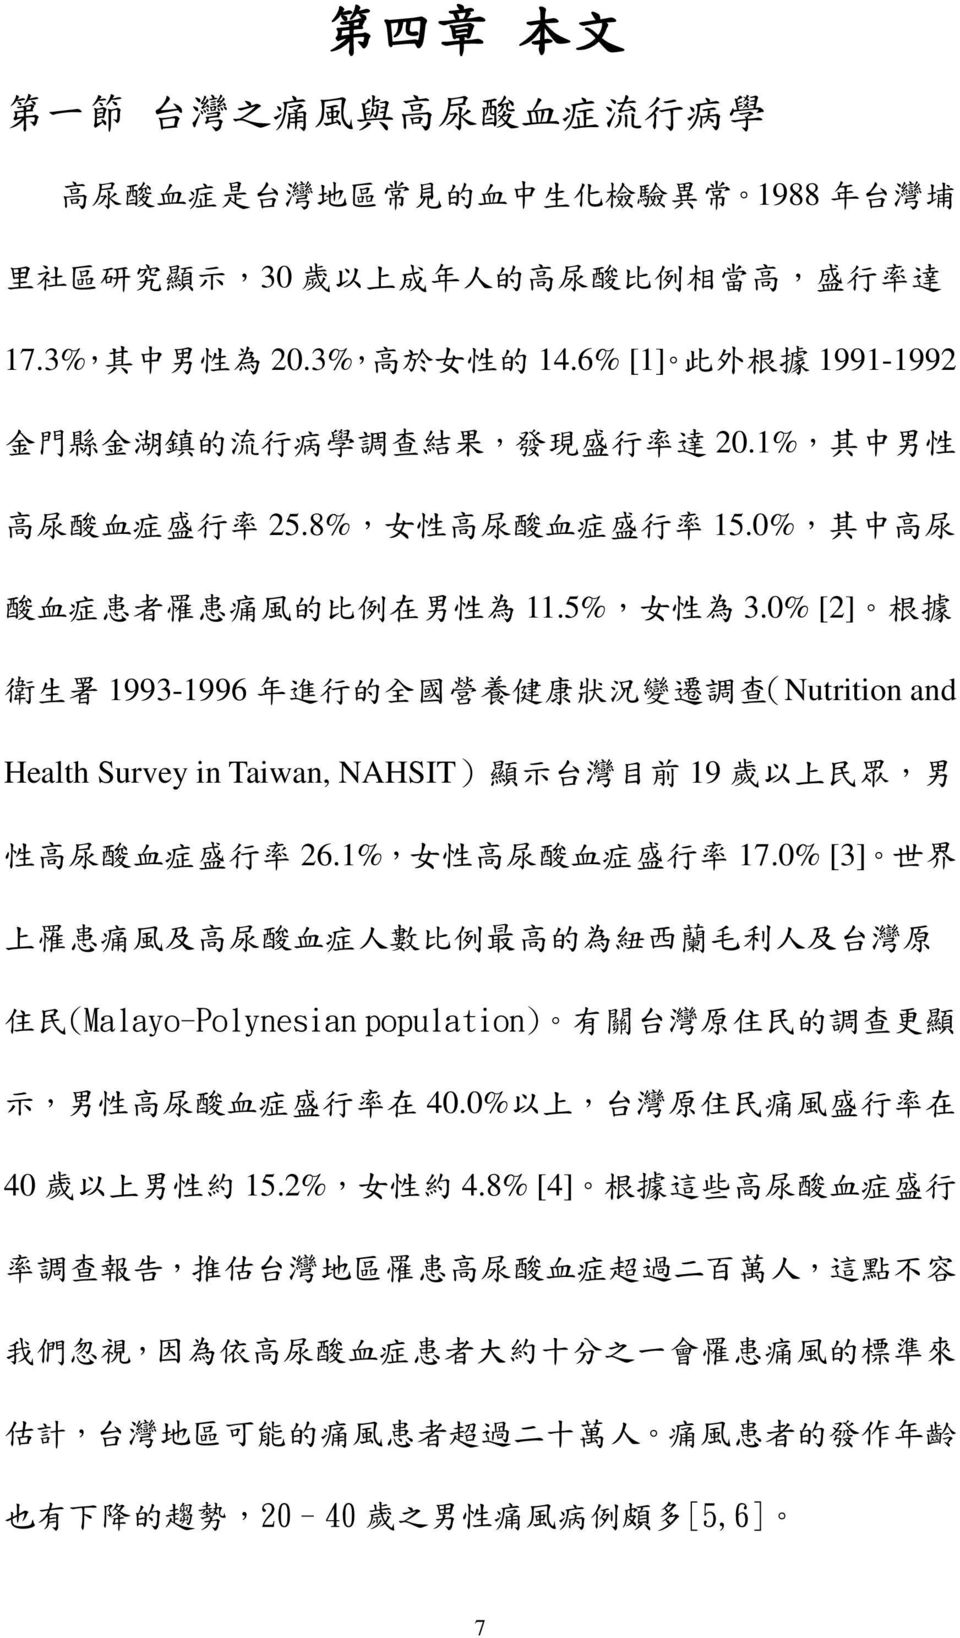 0% [2] 根 據 衛 生 署 1993-1996 年 進 行 的 全 國 營 養 健 康 狀 況 變 遷 調 查 (Nutrition and Health Survey in Taiwan, NAHSIT) 顯 示 台 灣 目 前 19 歲 以 上 民 眾, 男 性 高 尿 酸 血 症 盛 行 率 26.1%, 女 性 高 尿 酸 血 症 盛 行 率 17.